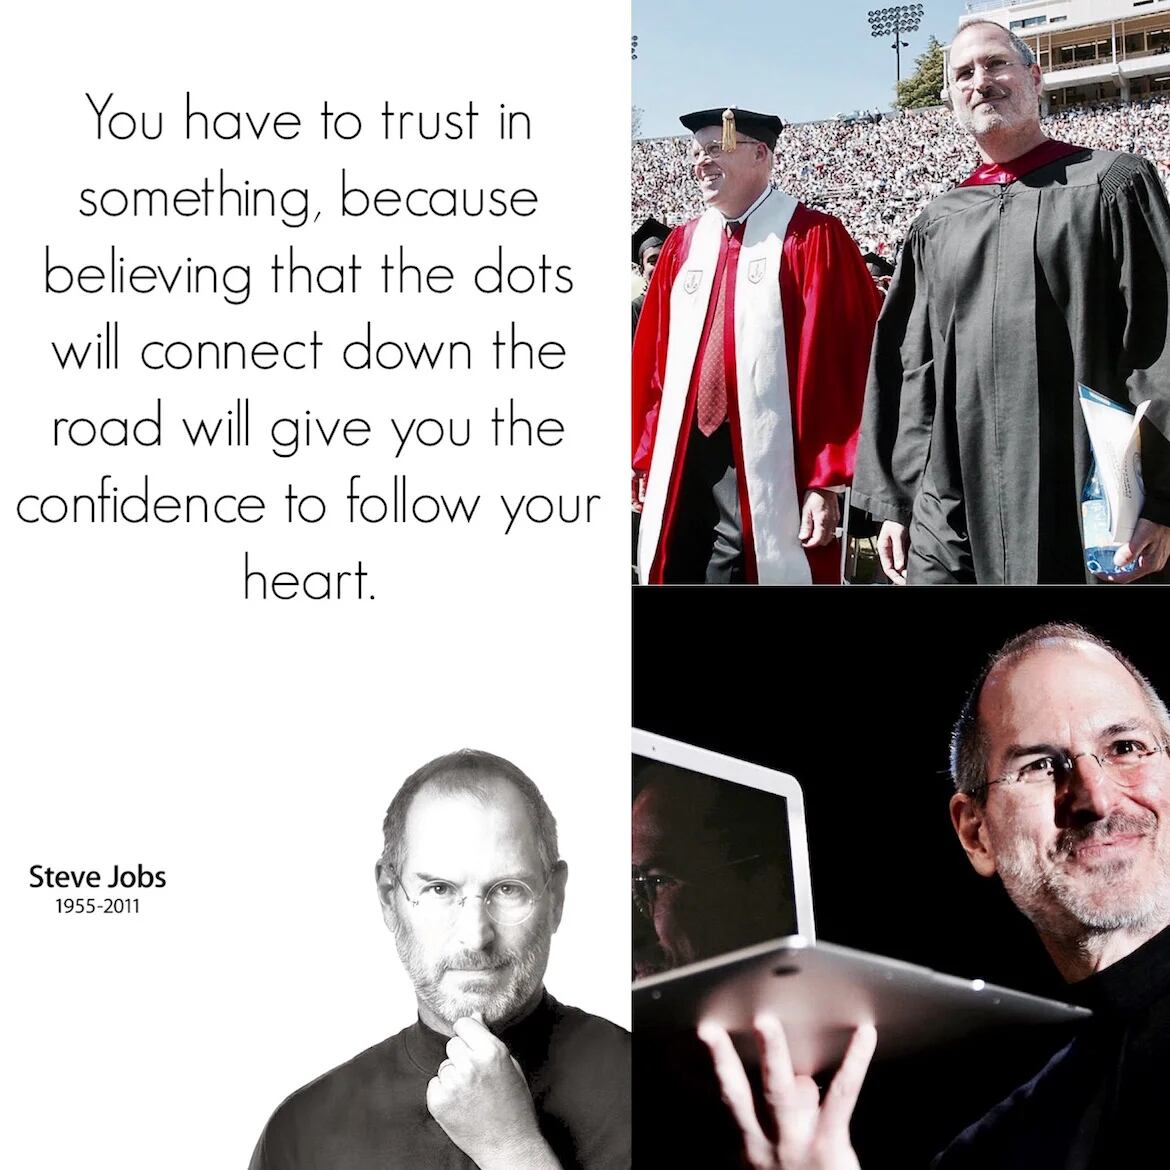 Probablemente uno de los hombres más influyentes de nuestra generación, Steve Jobs bromeó durante un discurso ante los graduados de Stanford asegurando que una de “las mejores decisiones” de su vida fue haber abandonado la universidad de Reed